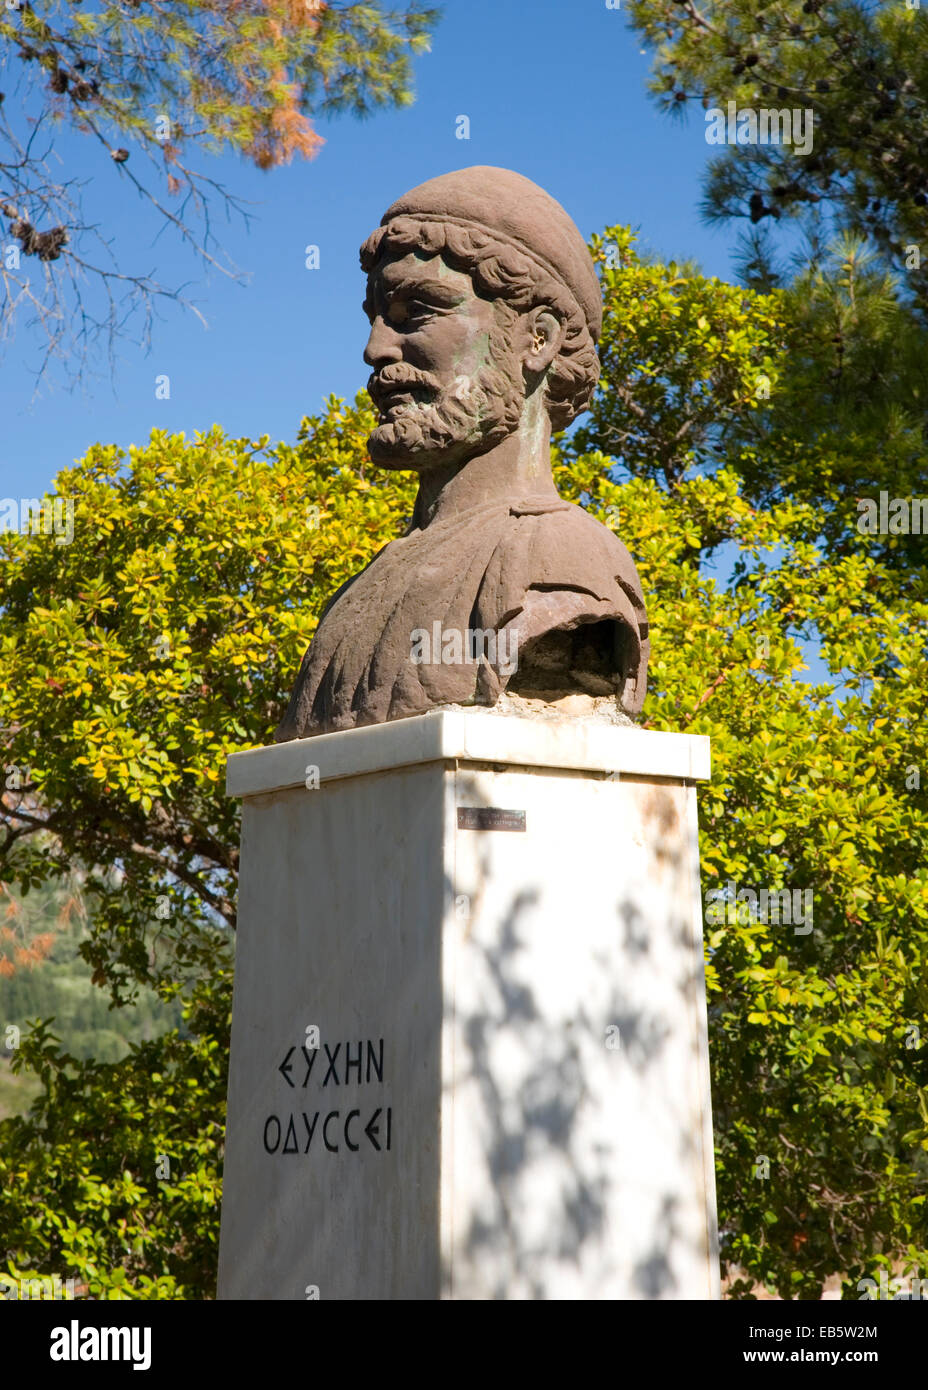 Stavros, Itaca, Isole Ionie, Grecia. Busto di Ulisse, il leggendario re di Itaca, nella piazza del villaggio. Foto Stock